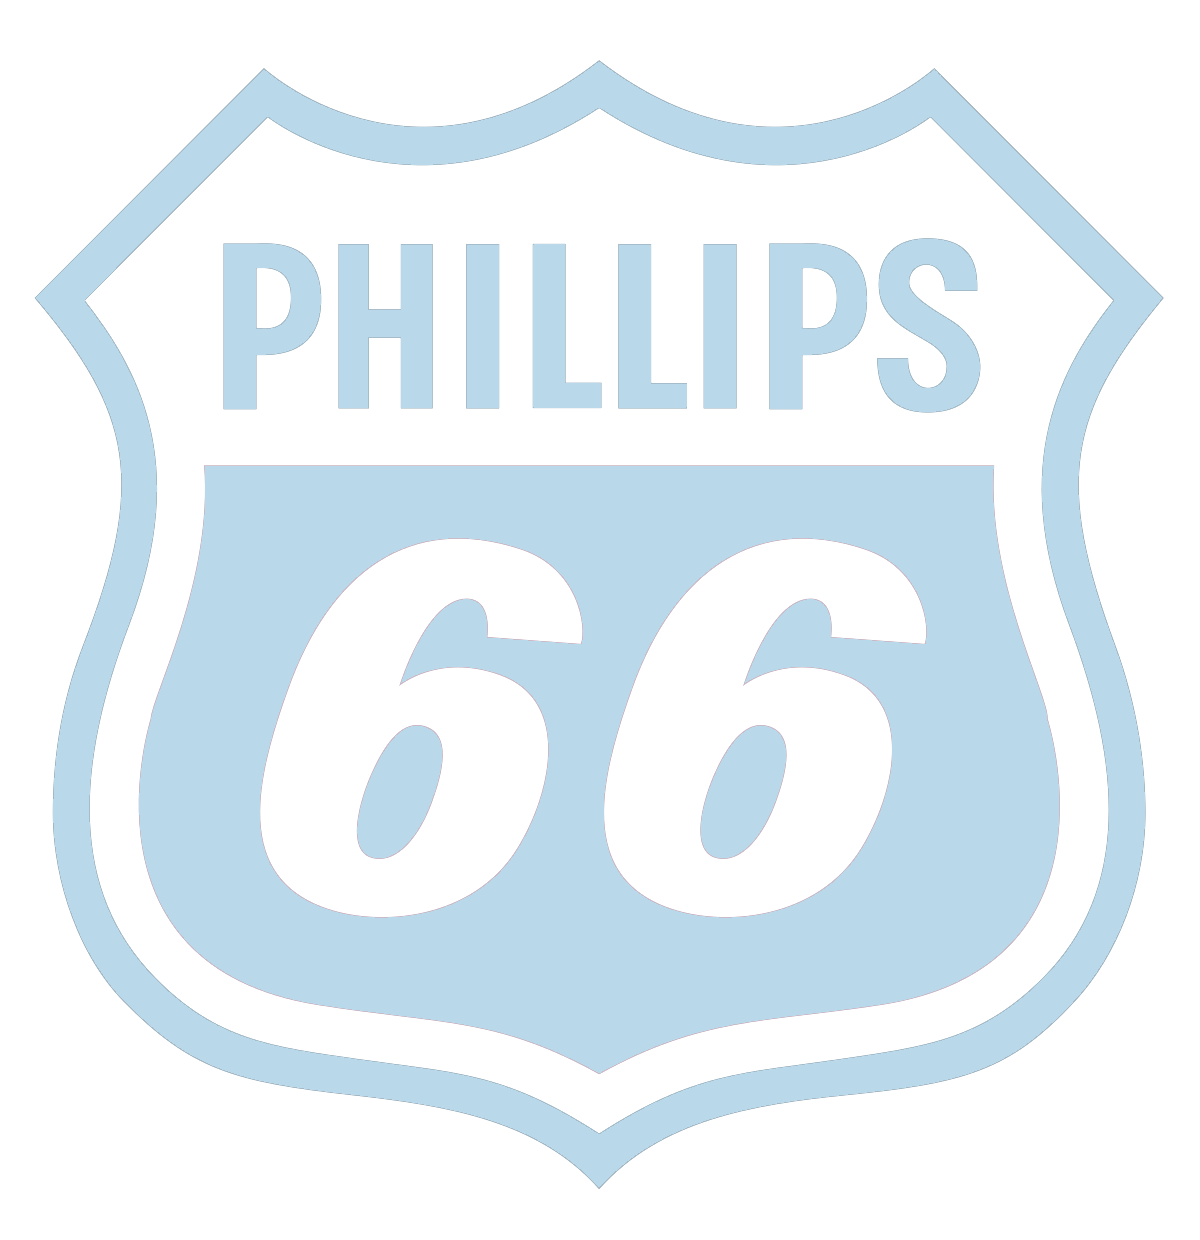 Phillips66-logo